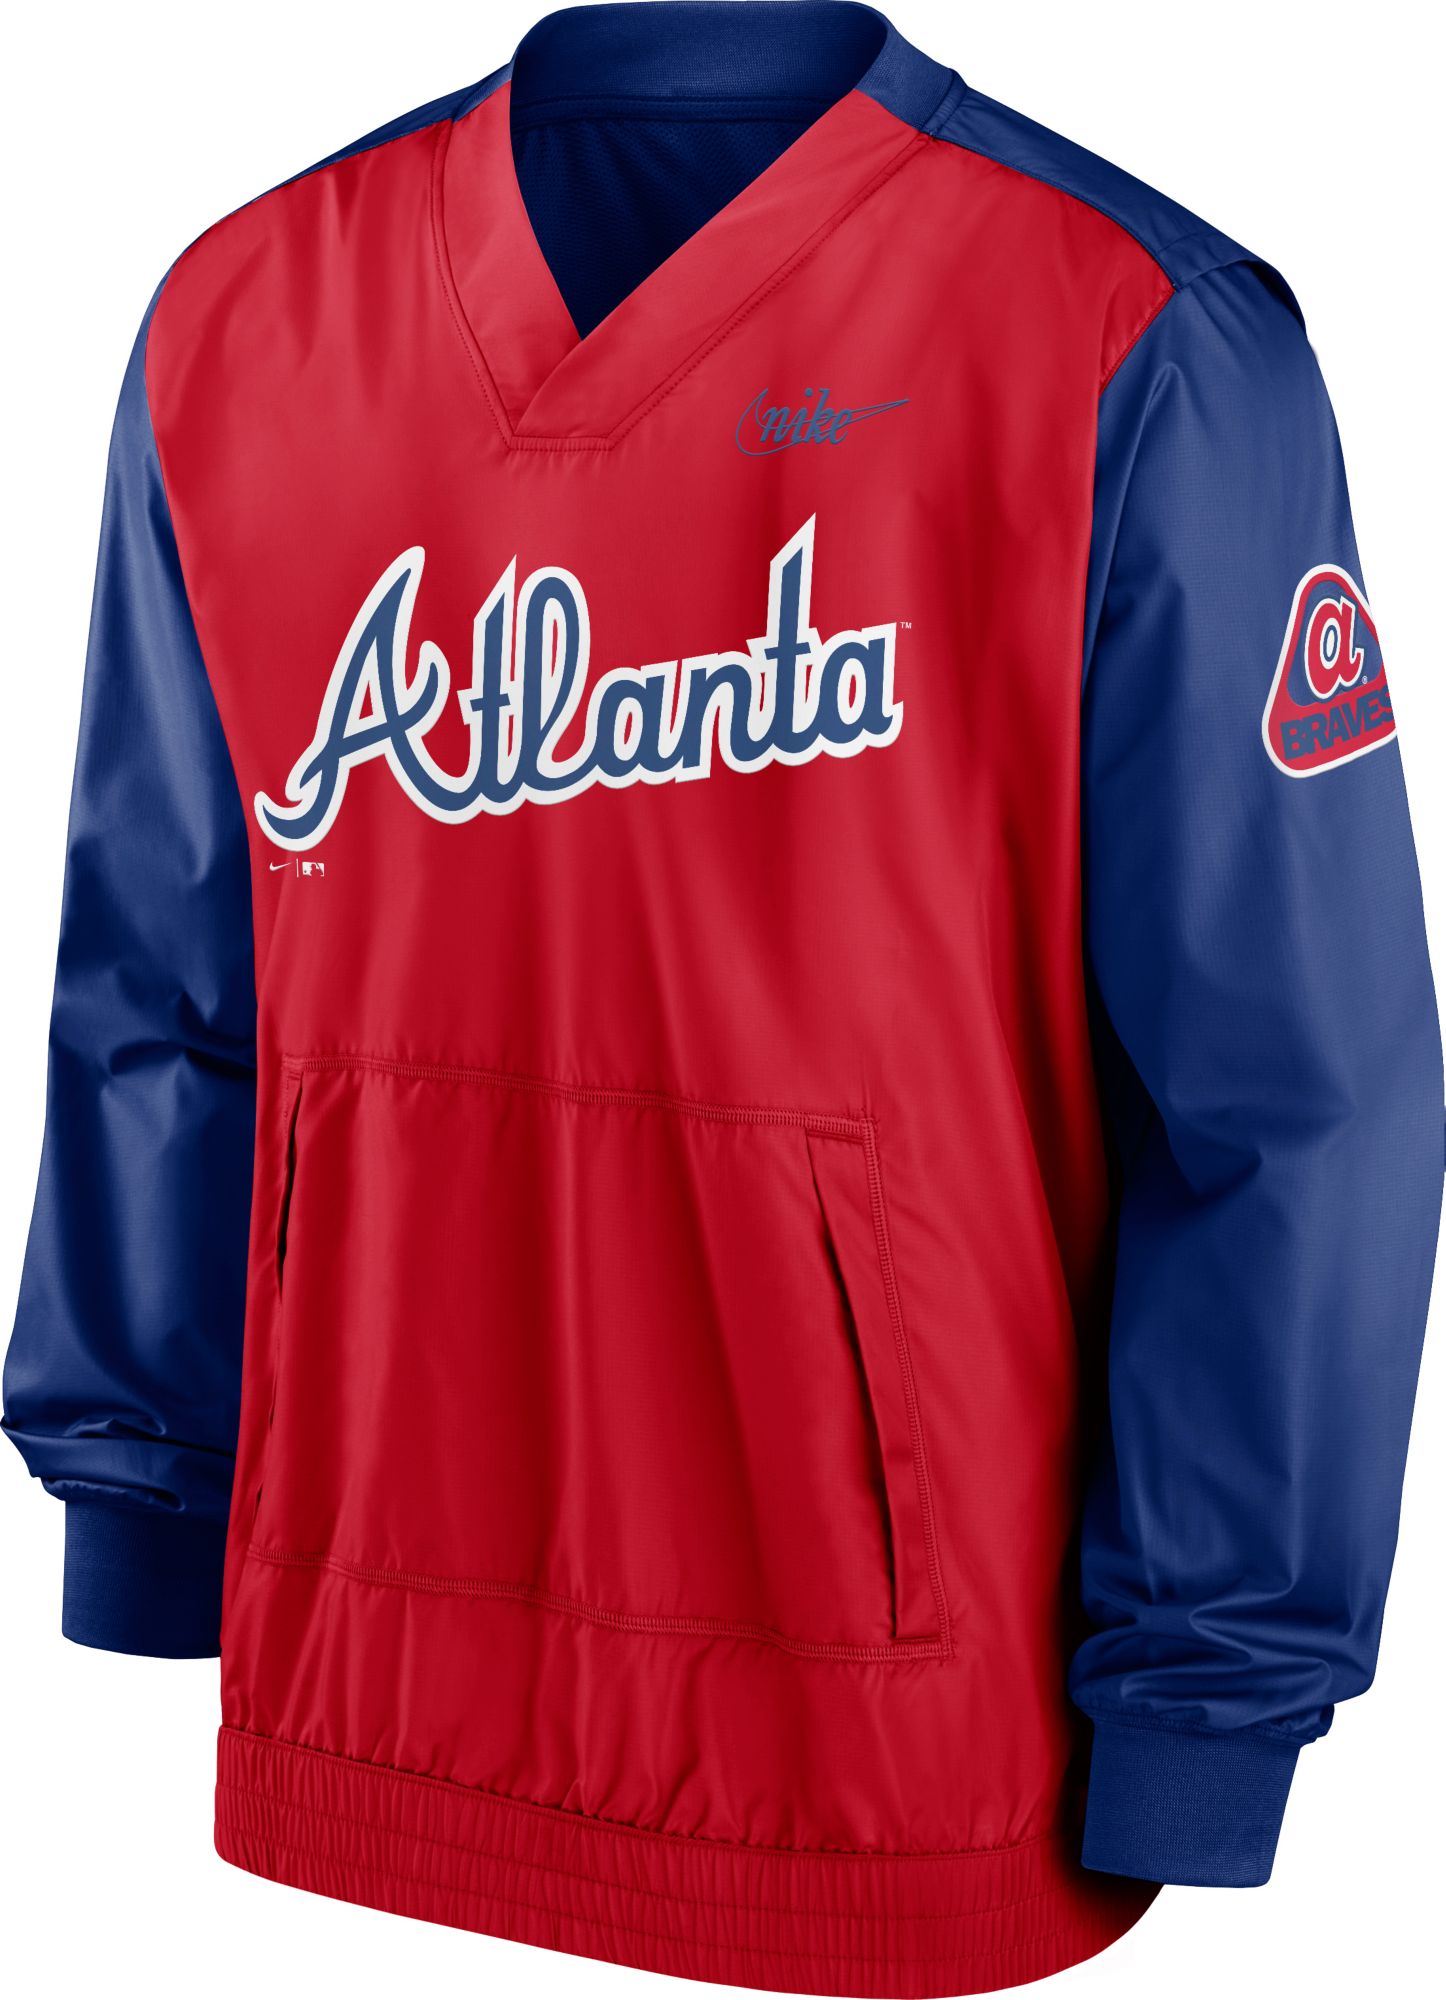 Mlb Atlanta Braves Boys' Pullover Jersey : Target